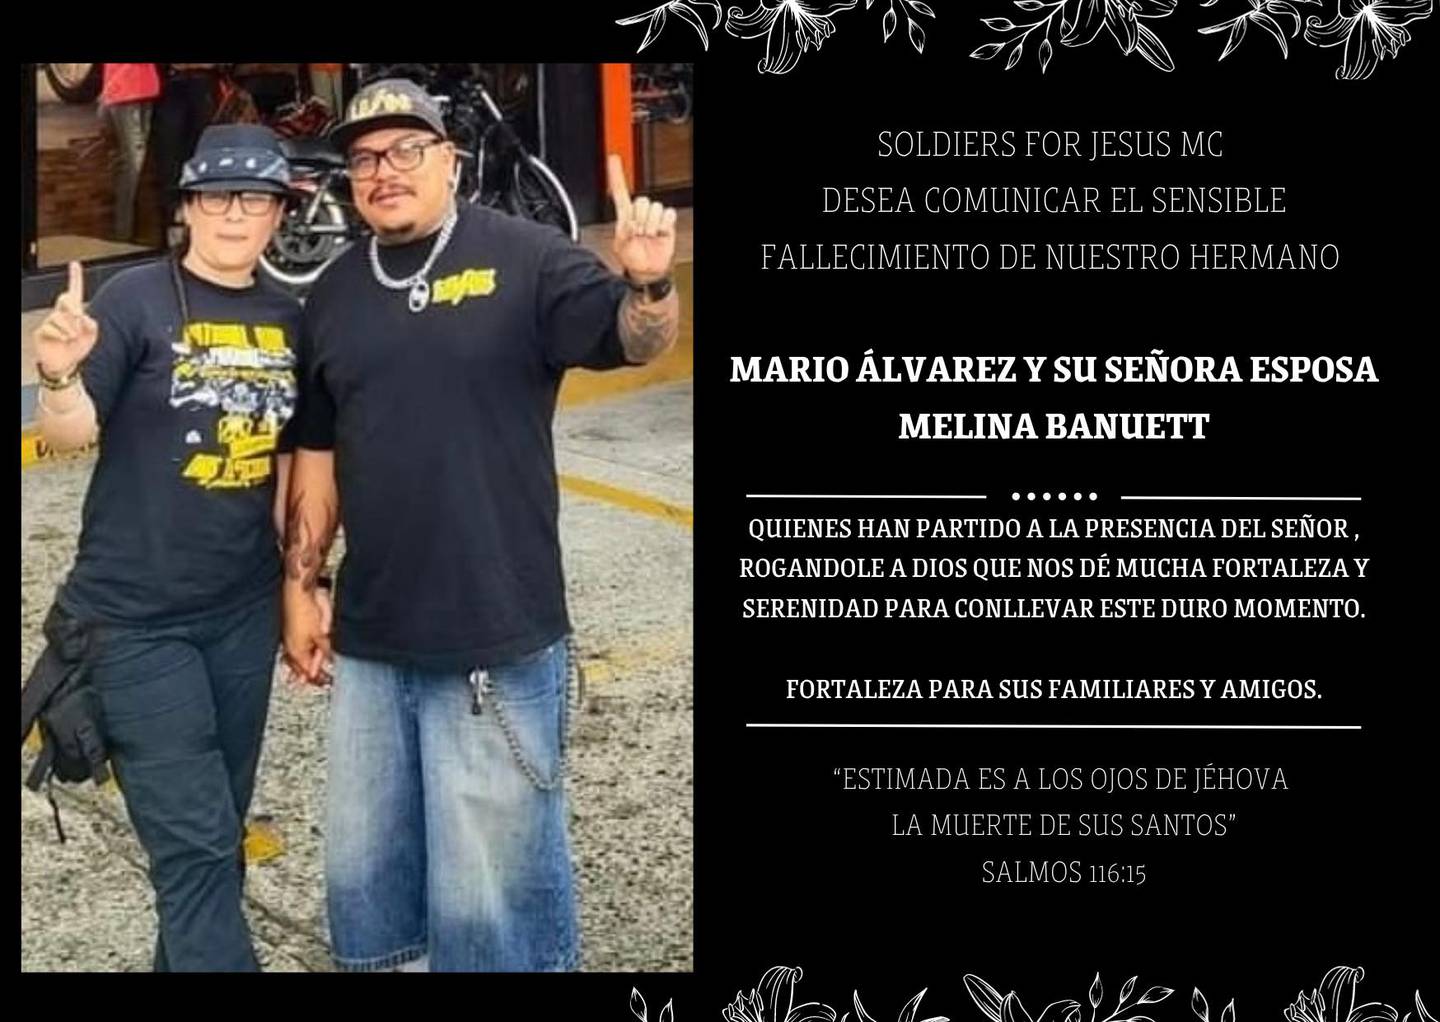 Mario Álvarez Naranjo y Melina Bannuet Castro esposos motociclistas ticos murieron al caer en guindo en Panamá. Foto: Soldiers For Jesús Mc Costa Rica